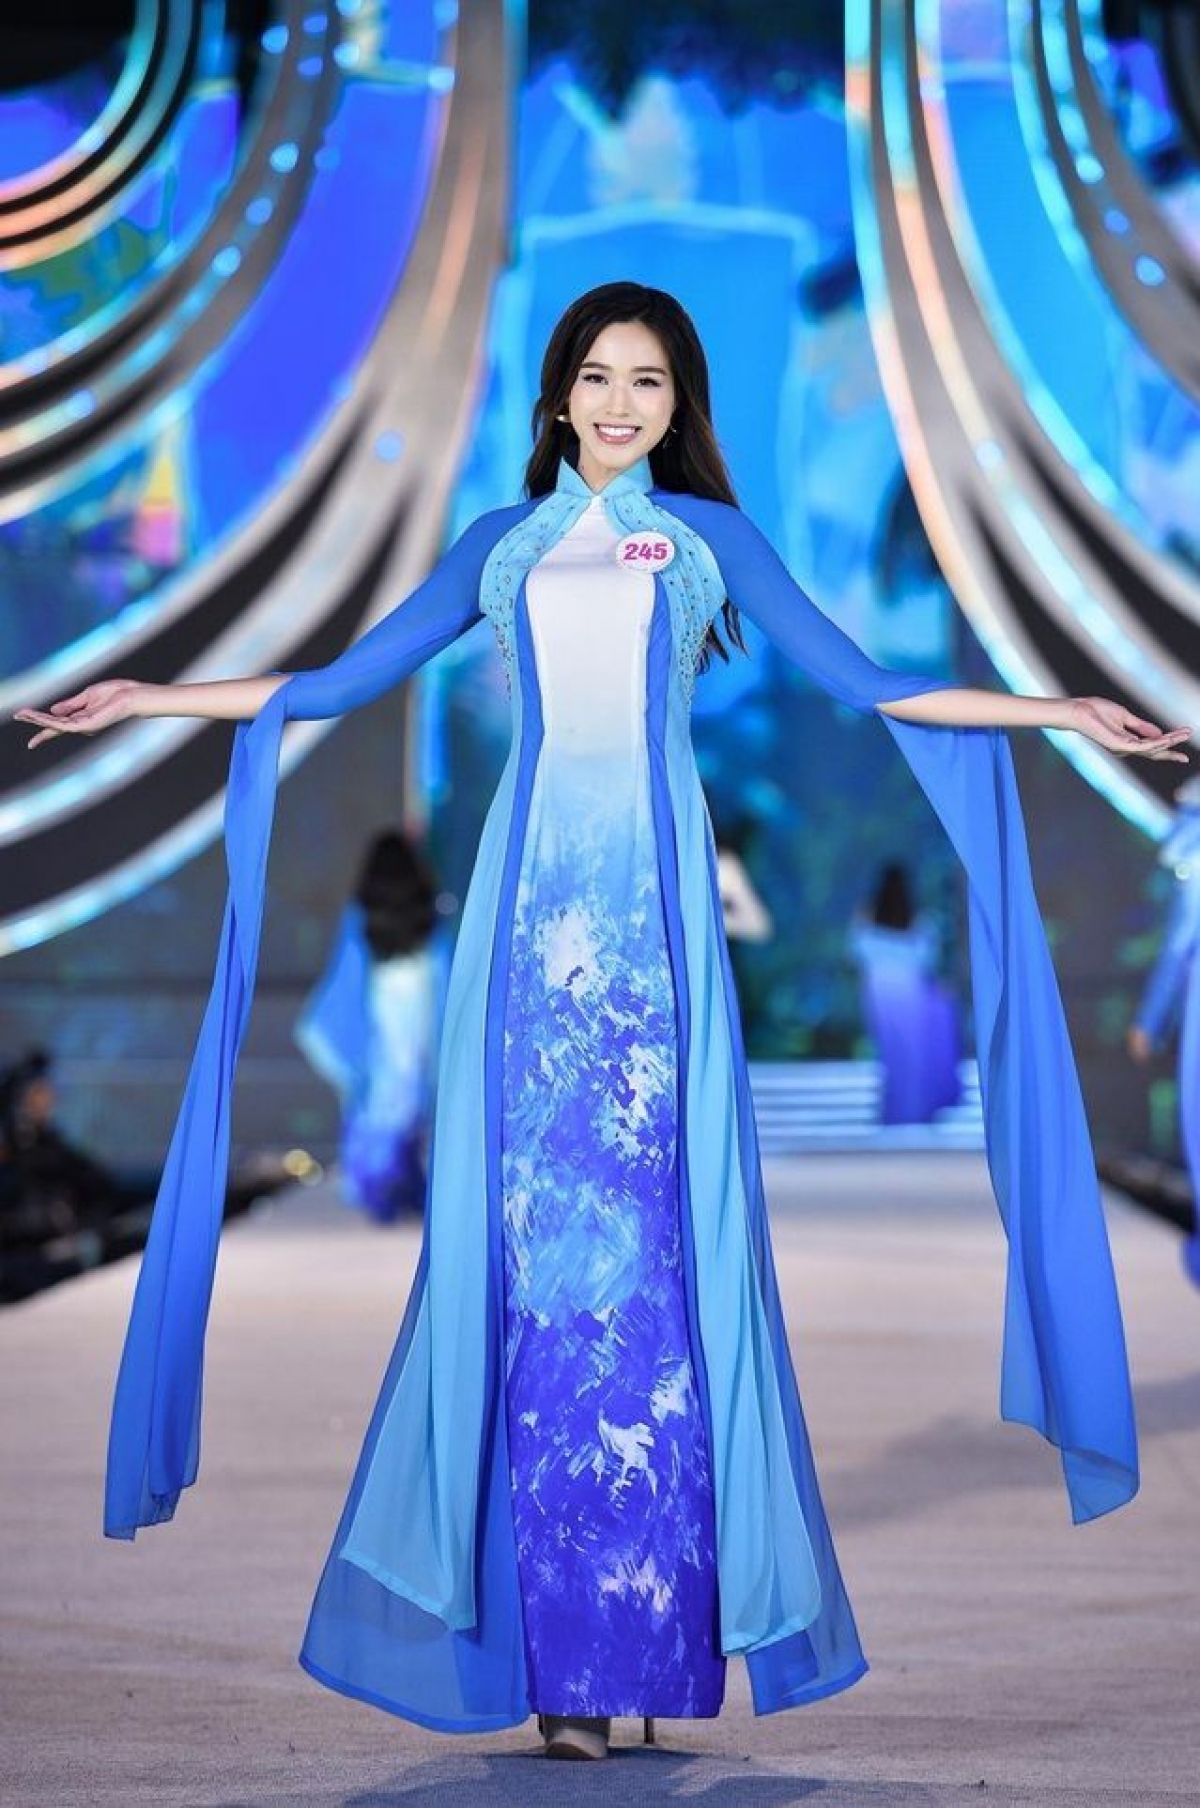 Trước khi đến với Hoa hậu Việt Nam 2020, Đỗ Thị Hà đã từng vào top 40 Hoa khôi Sinh viên Việt Nam.